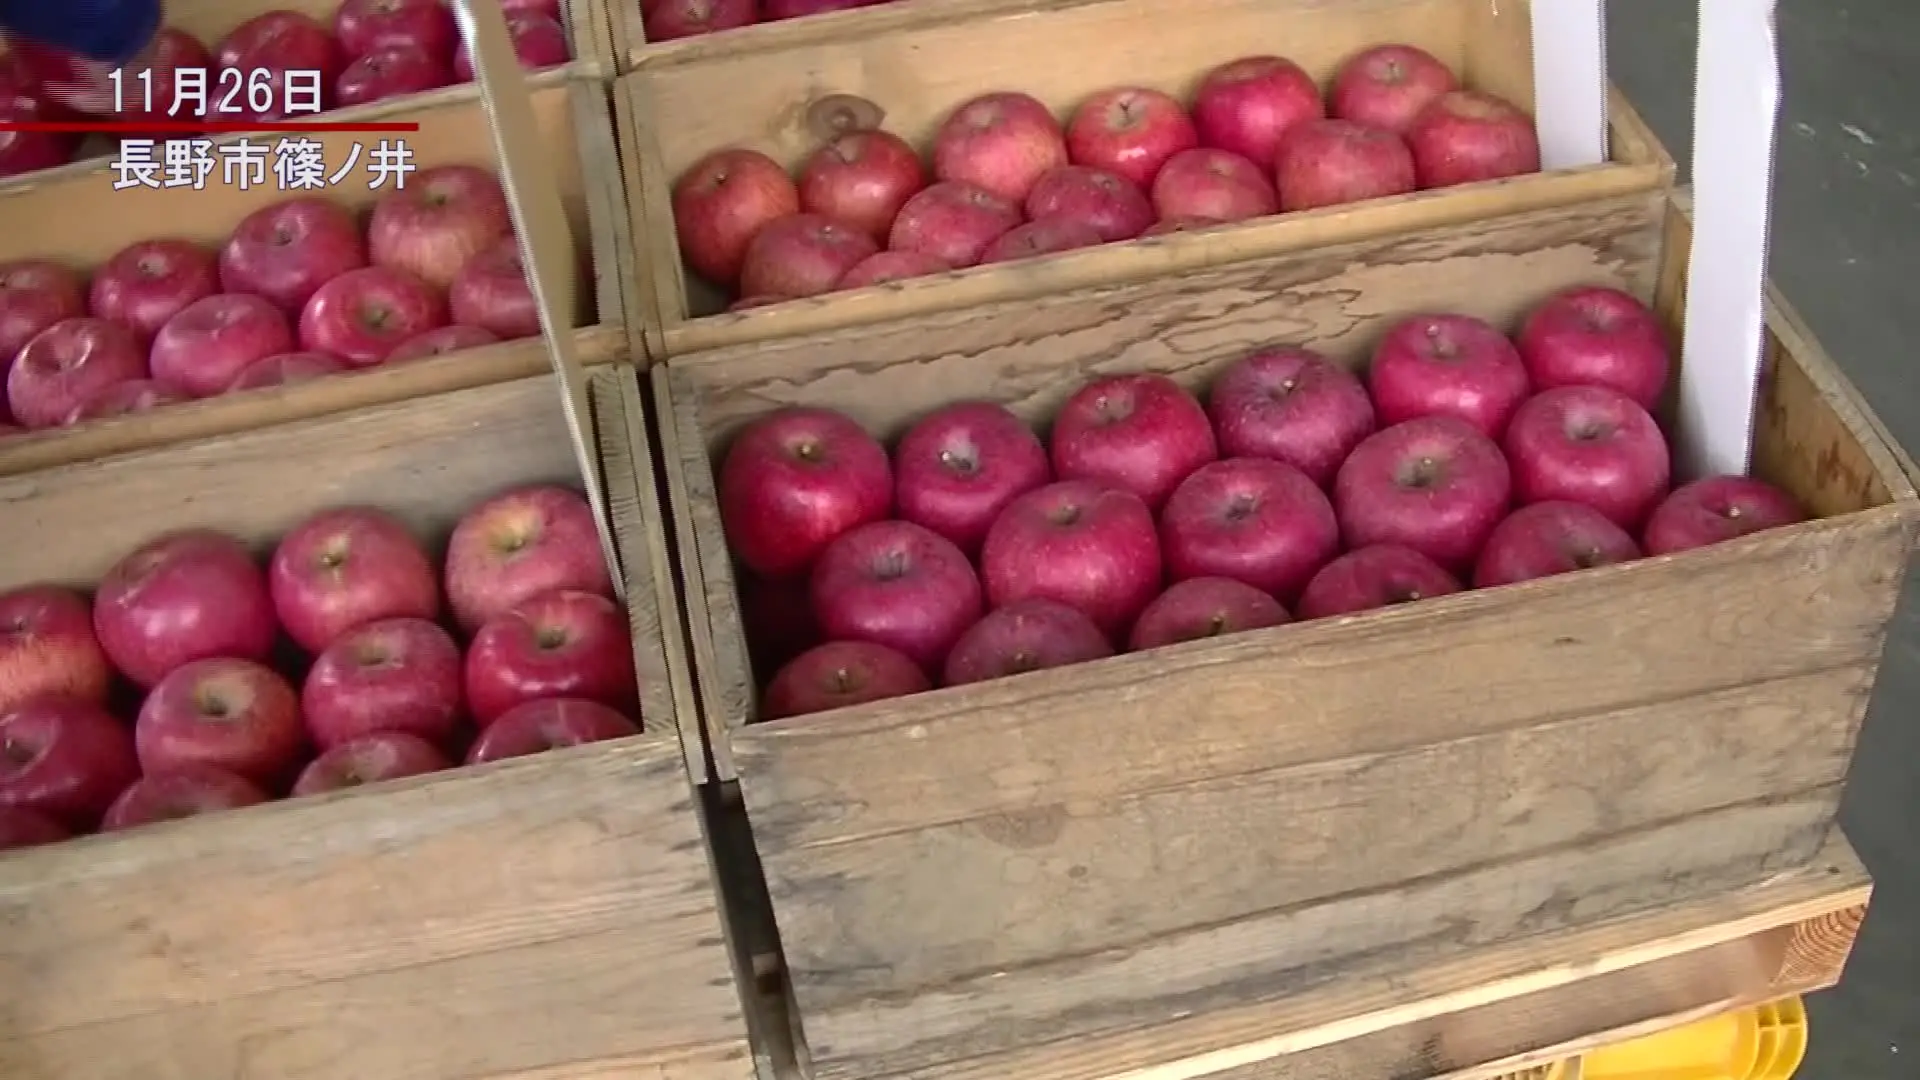 木箱にこだわり 長野で44年続くリンゴの品評会 The Page Yahoo ニュース